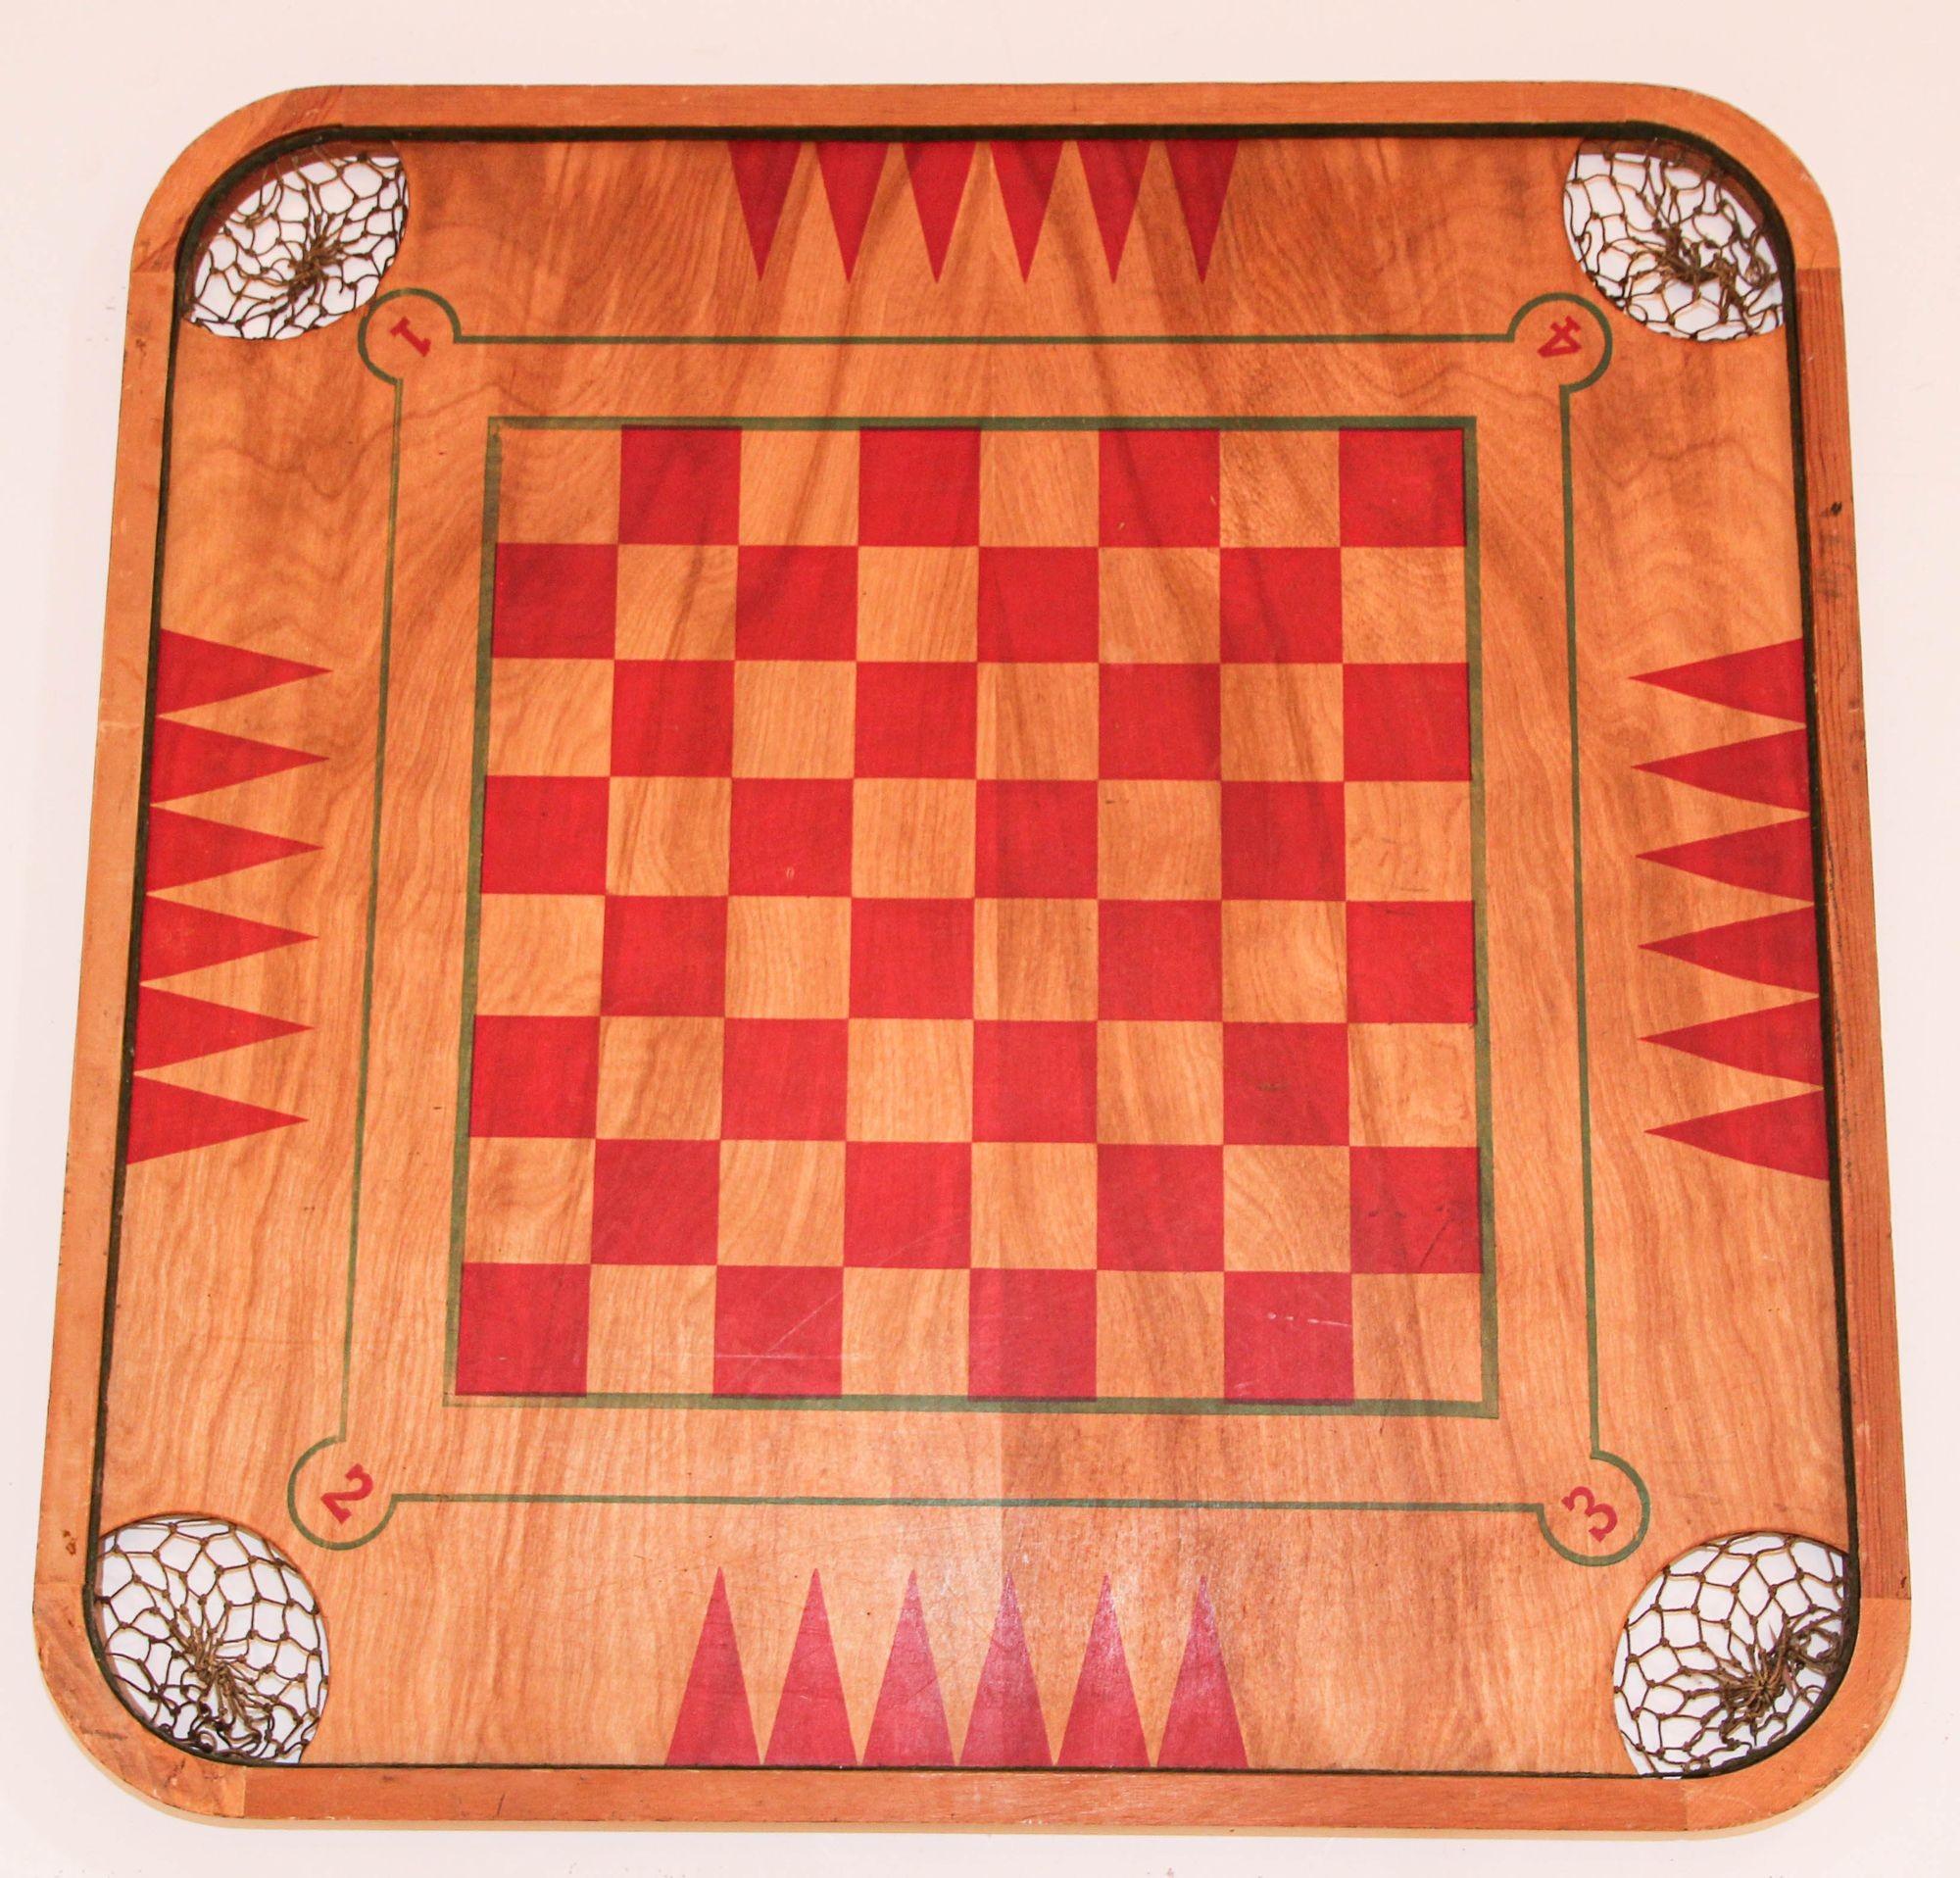 Antique Carrom Large Wooden Game Board Double-Sided .
Plateau de jeu en bois de la société Carrom 1907, fabriqué aux Etats-Unis.
Chaque coin de la planche contient une poche suspendue par une corde.
Ce plateau de jeu à combinaison de surfaces